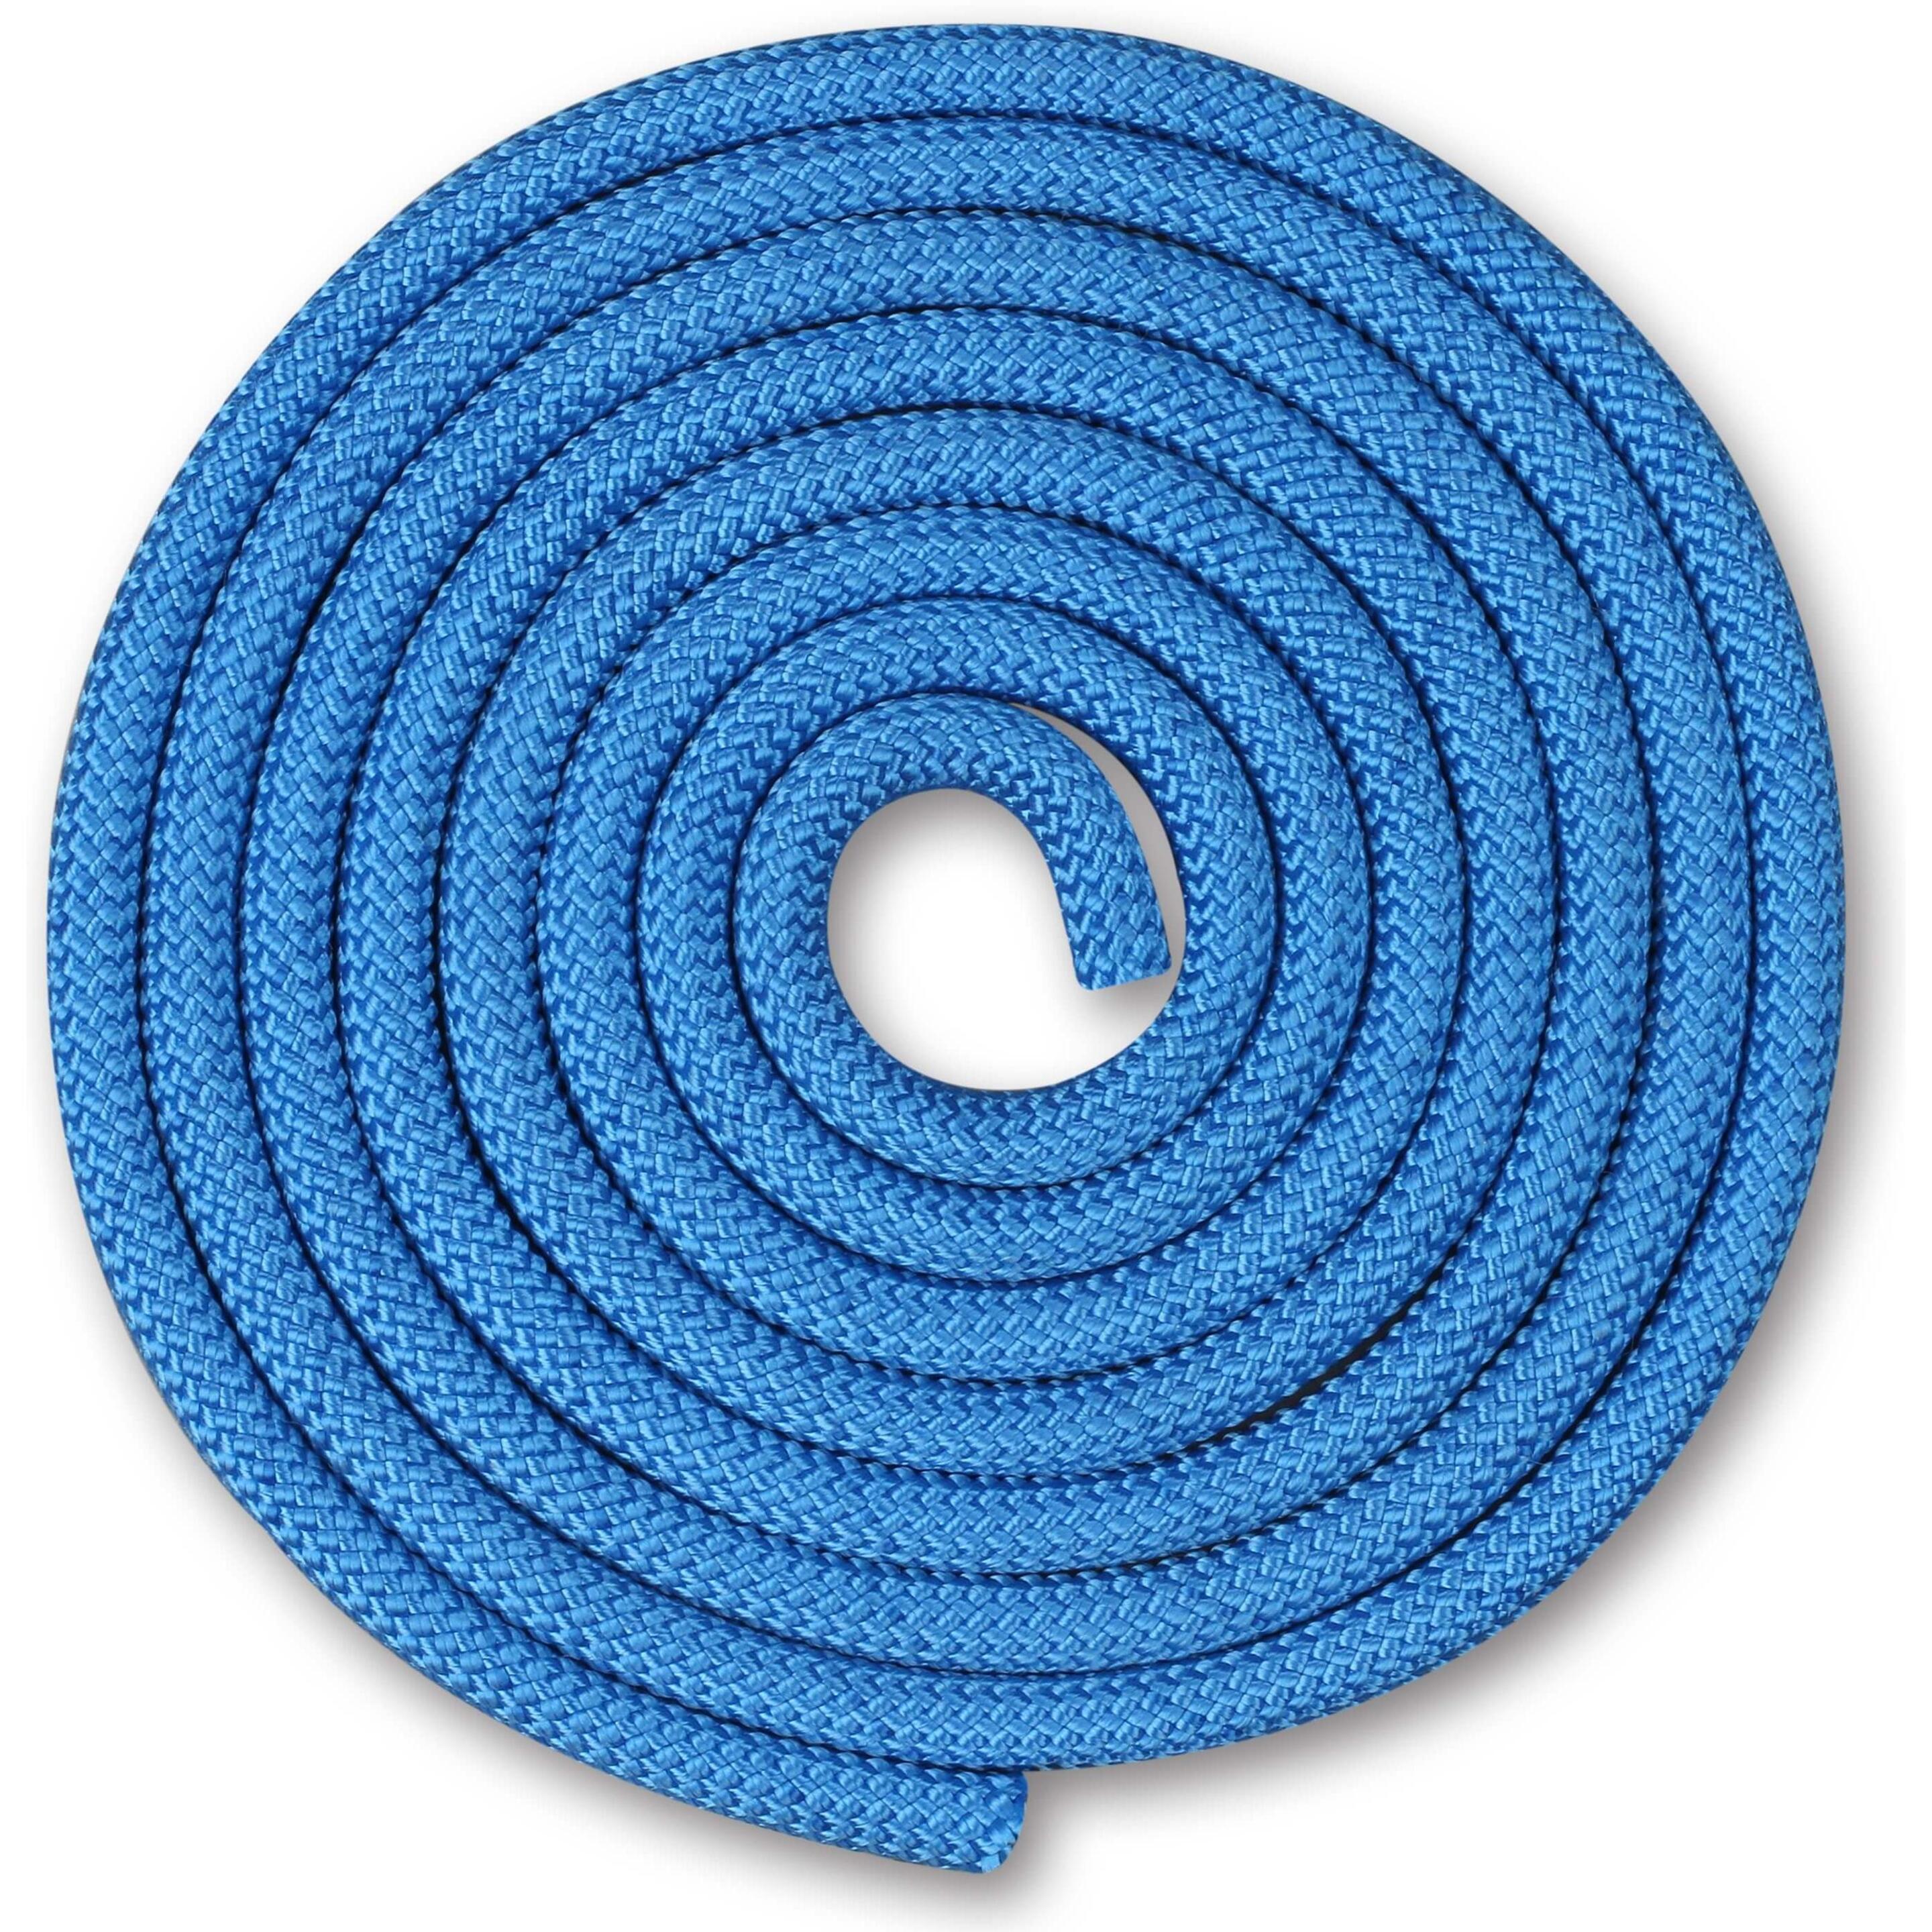 Cuerda Para Gimnasia Rítmica Ponderada 150g Indigo 2,5 M - azul - 